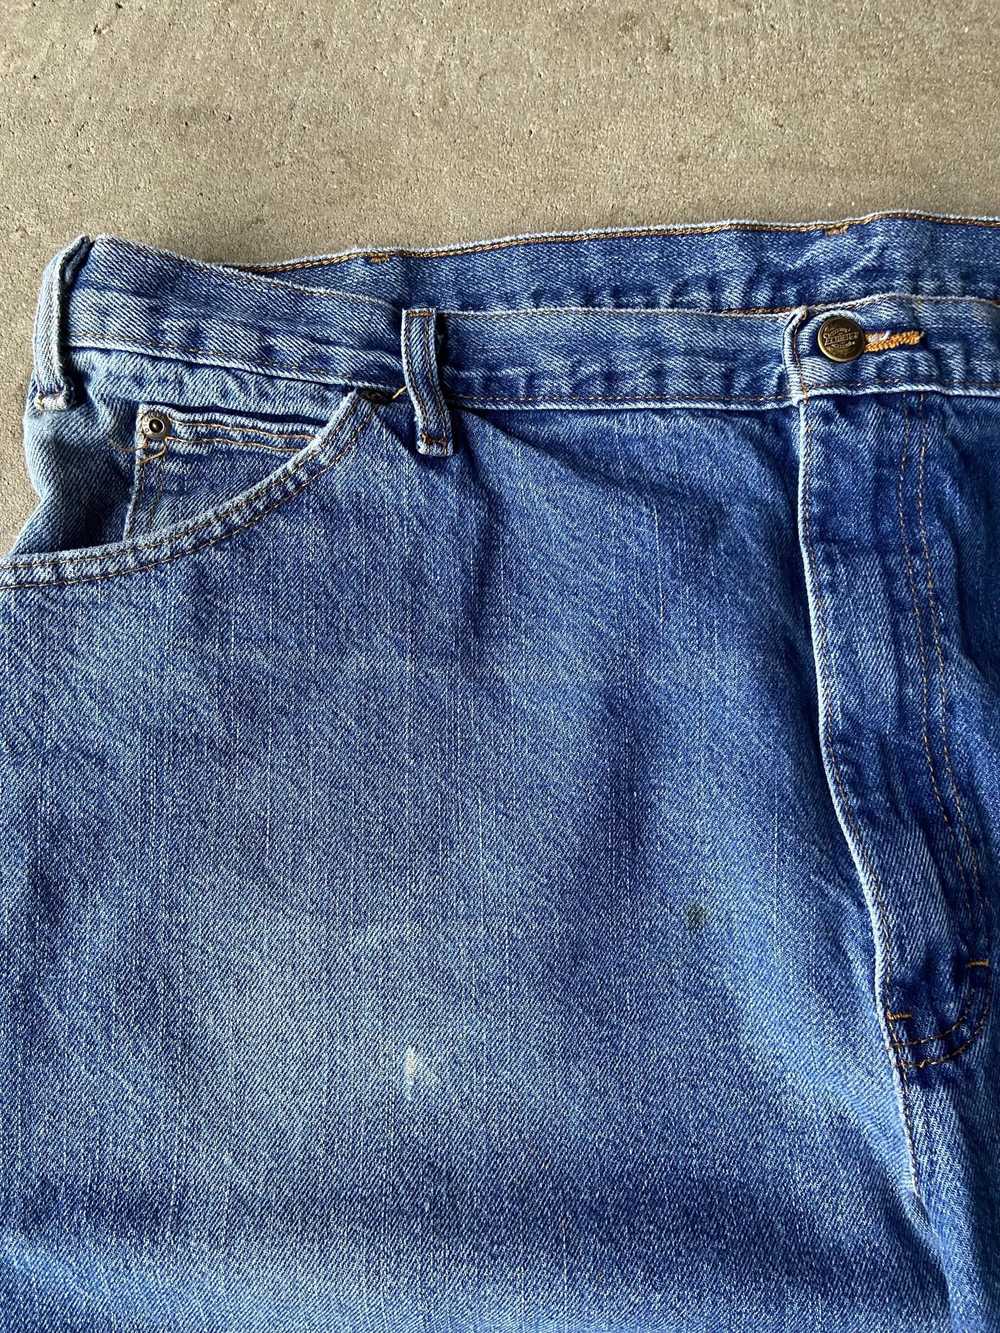 Dickies Dickies Faded Blue Jeans - image 2